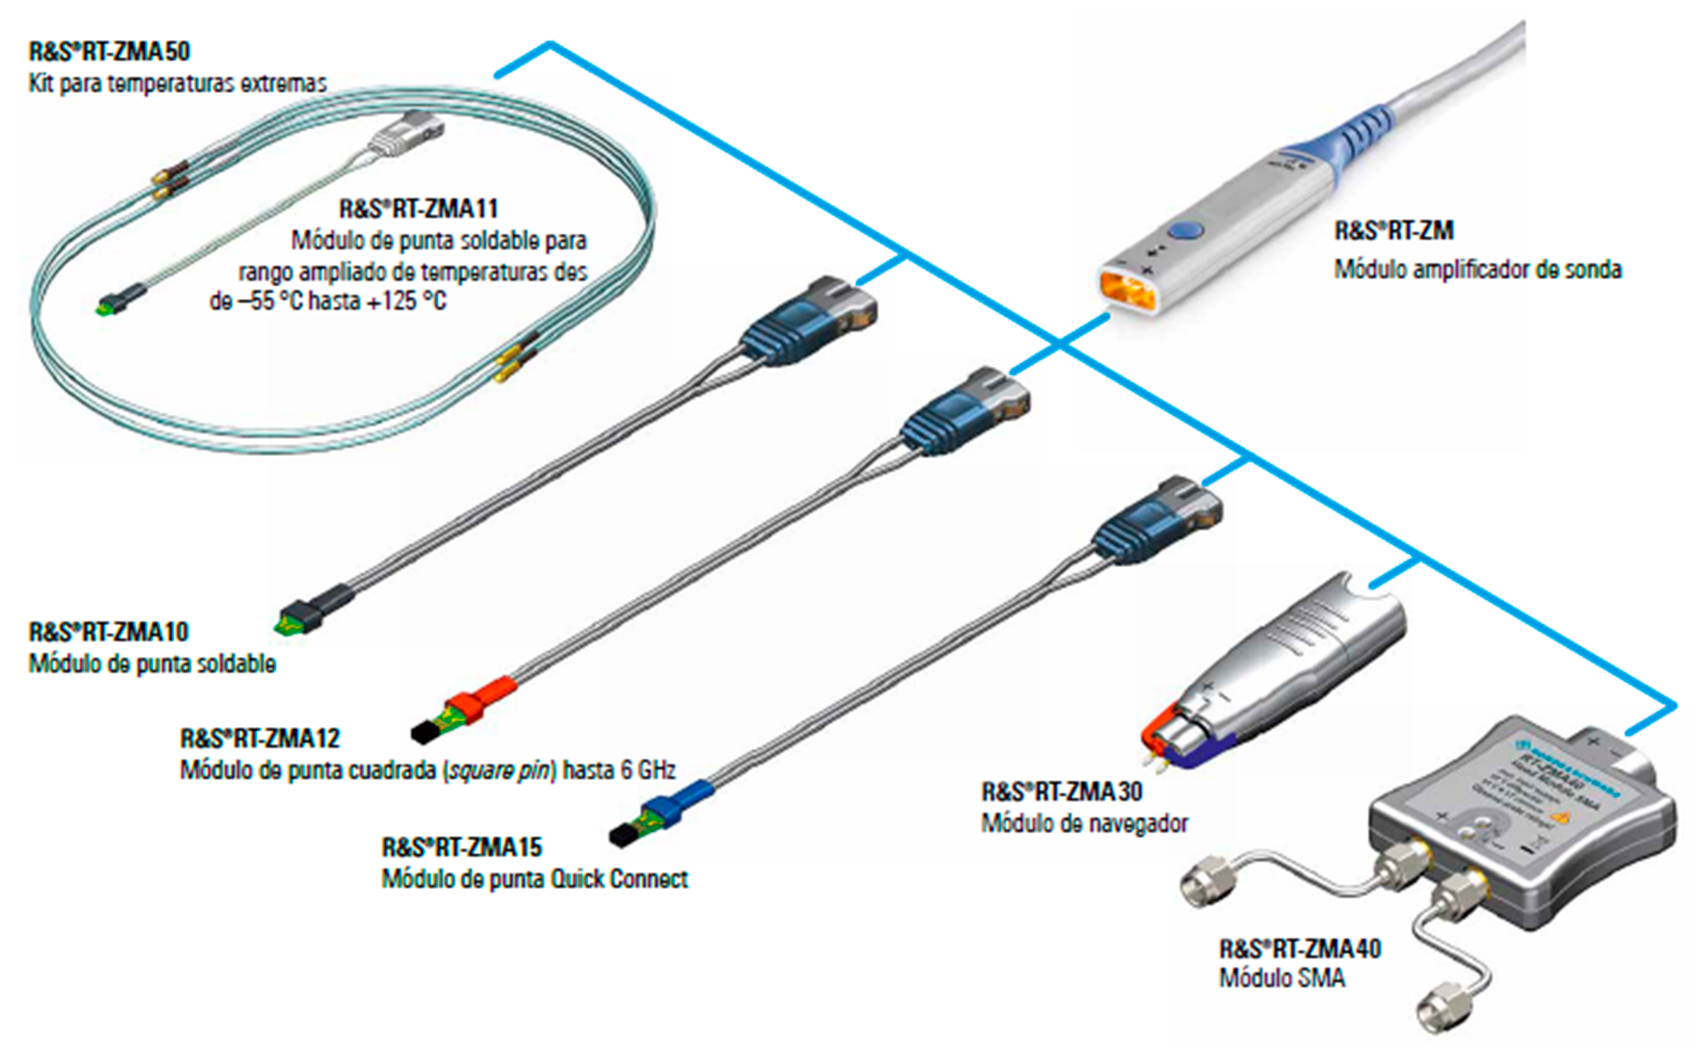 Fig. 6: Mdulos de puntas para la sonda de banda ancha R&S RT-ZM